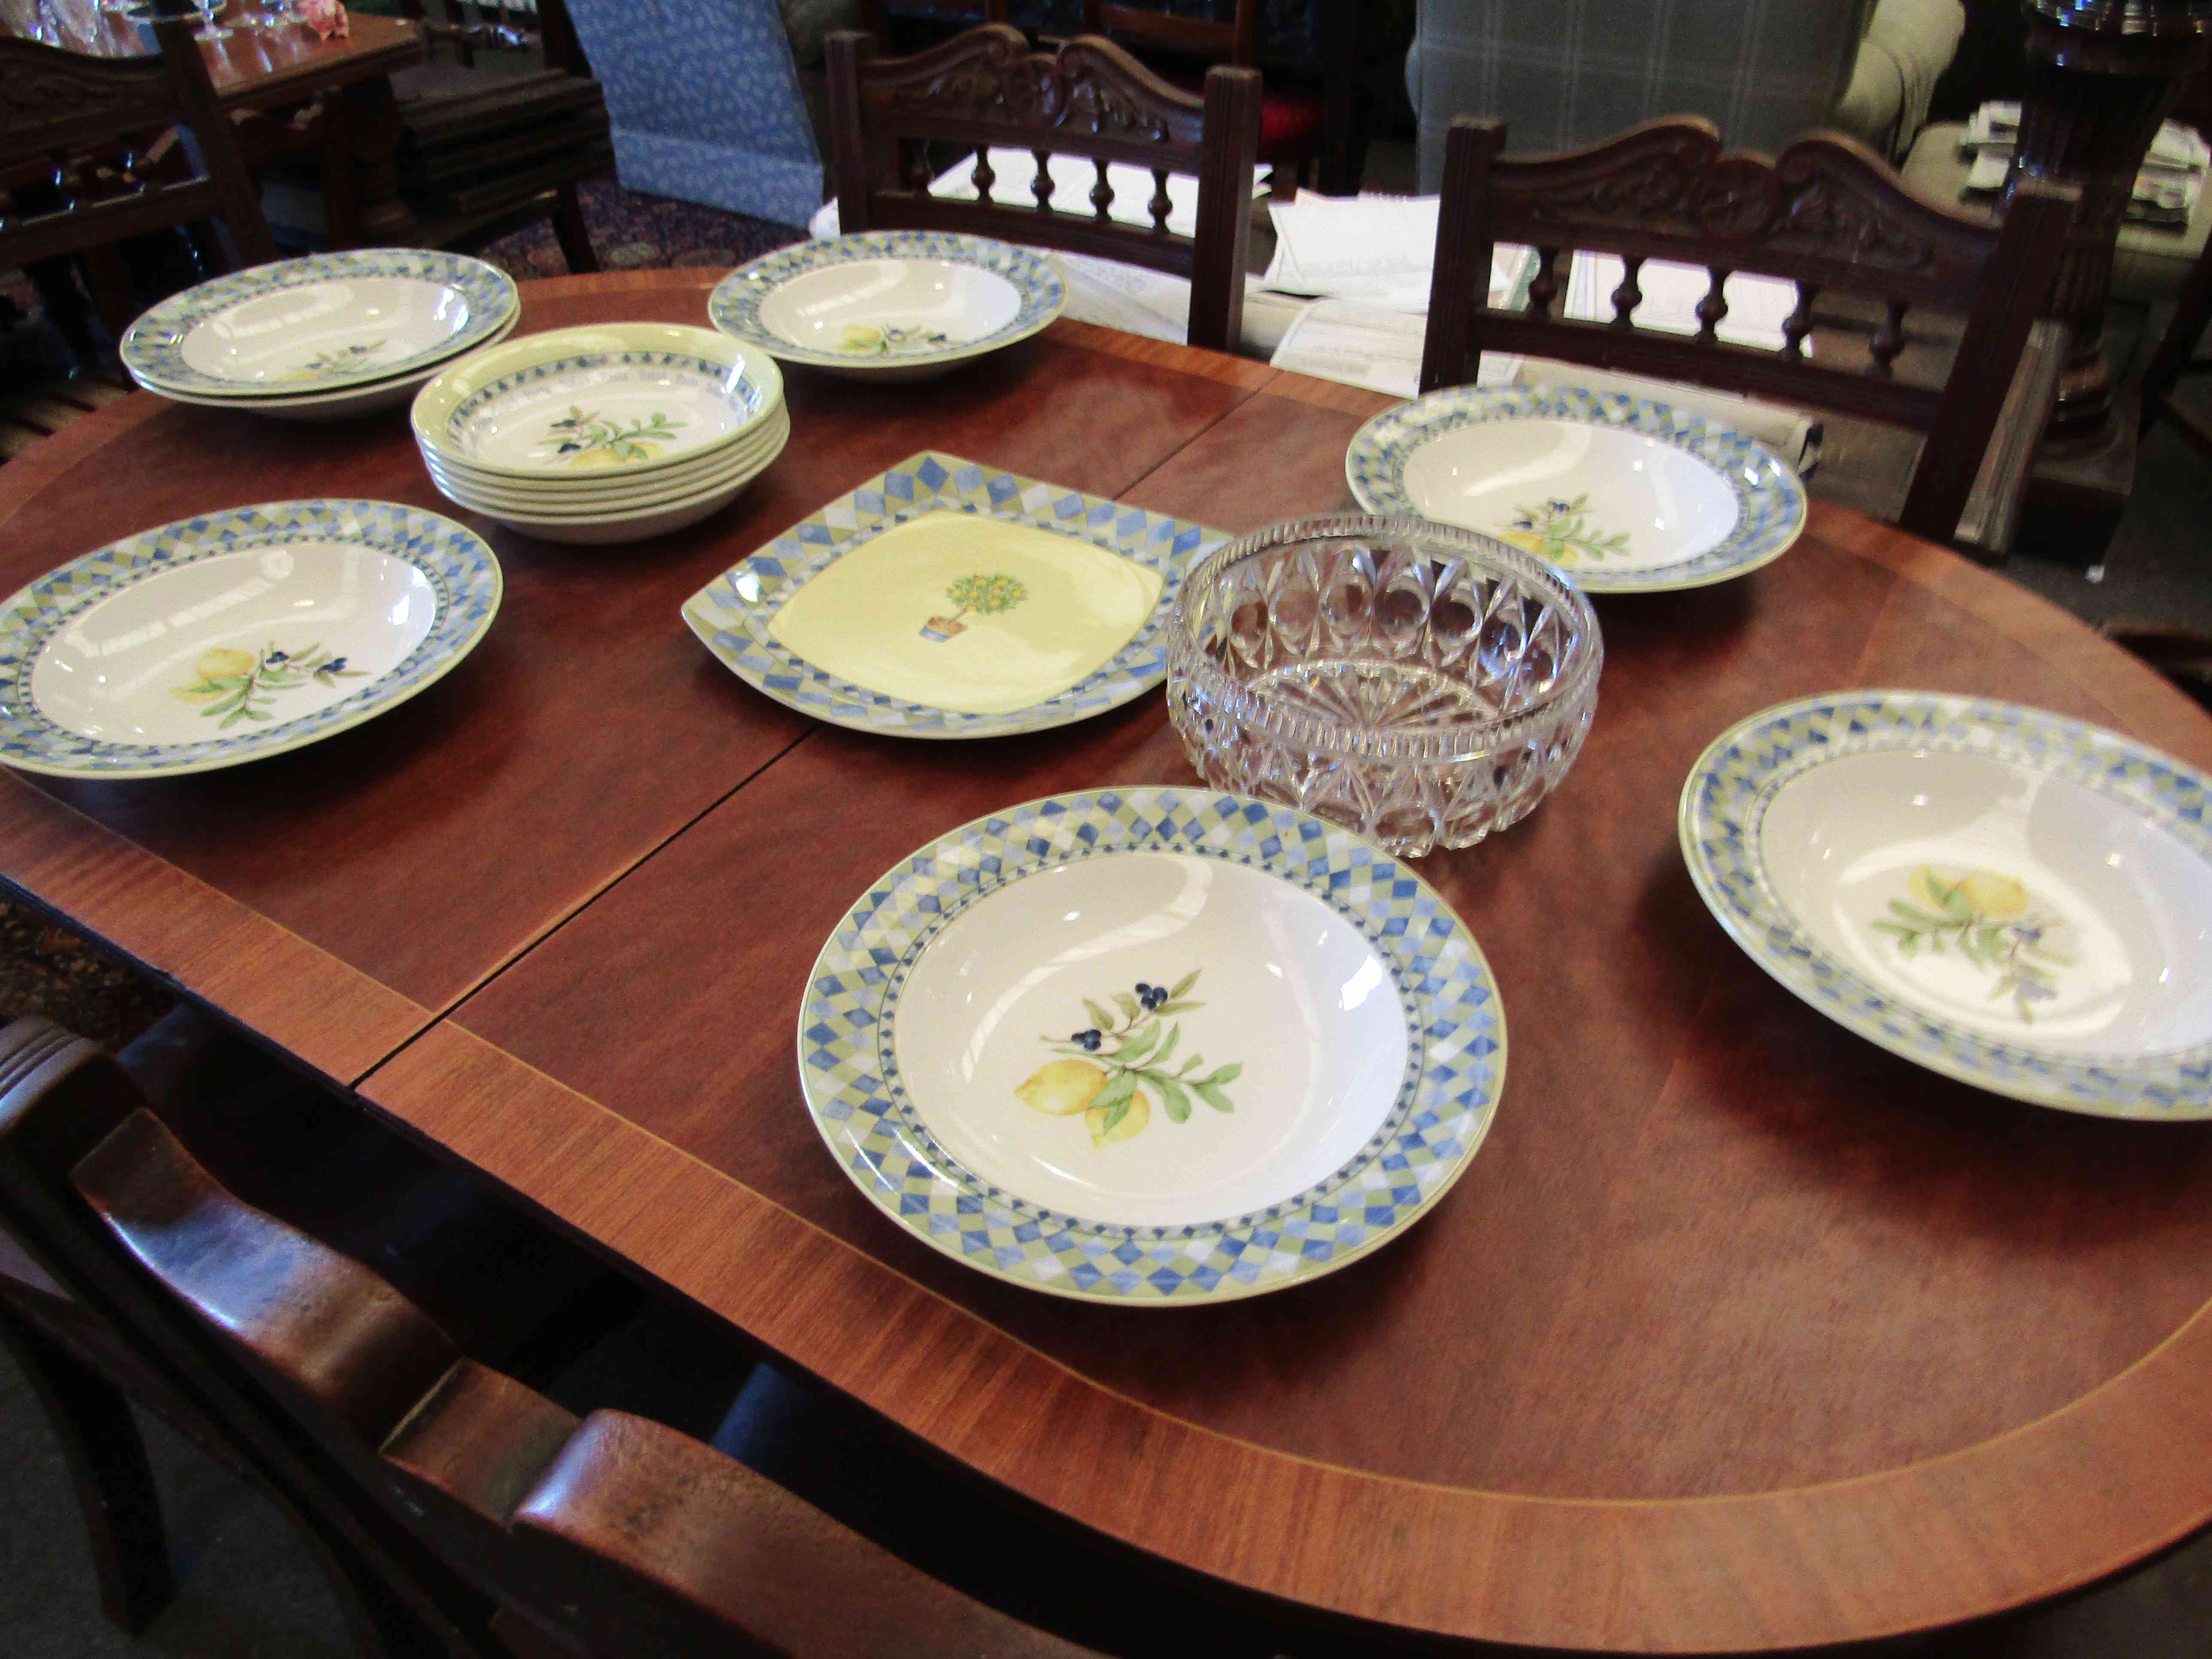 Royal Doulton "Garmina" pattern bowls and plate